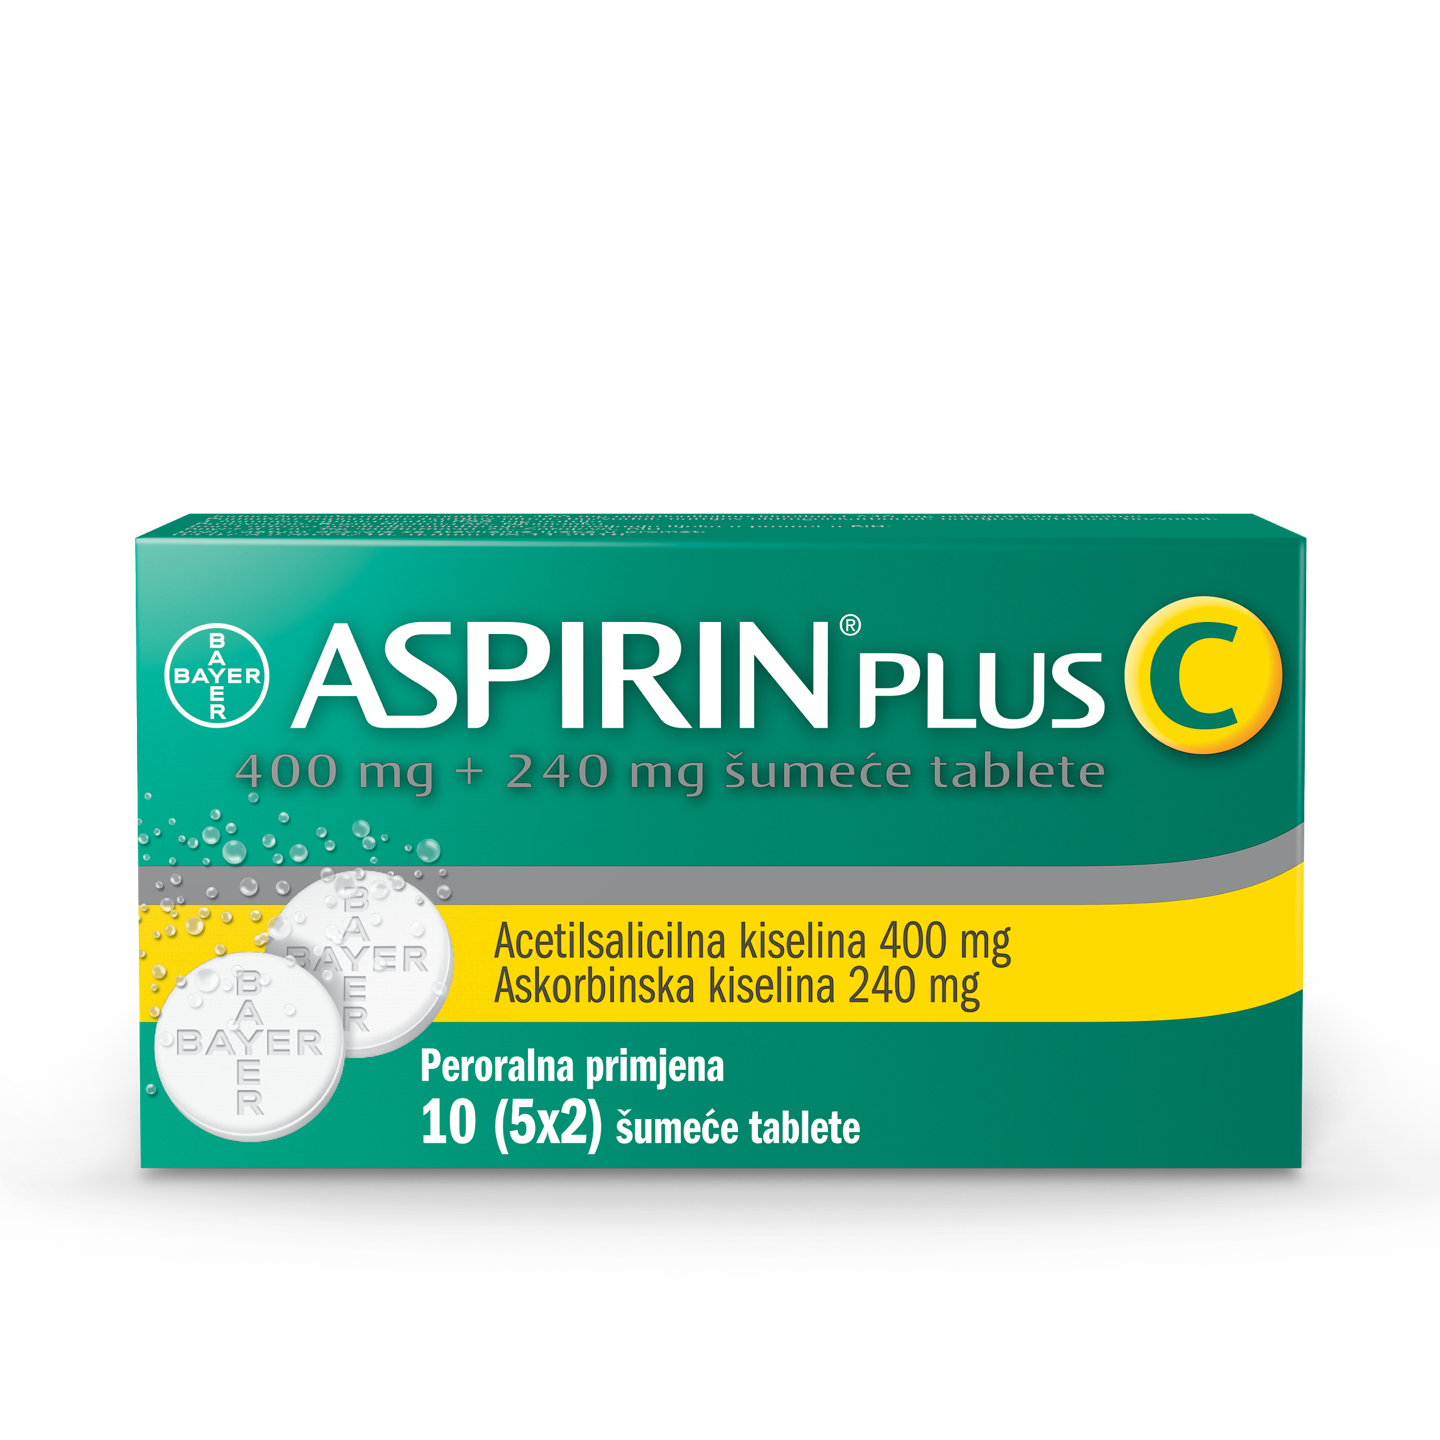 Aspirin plus c